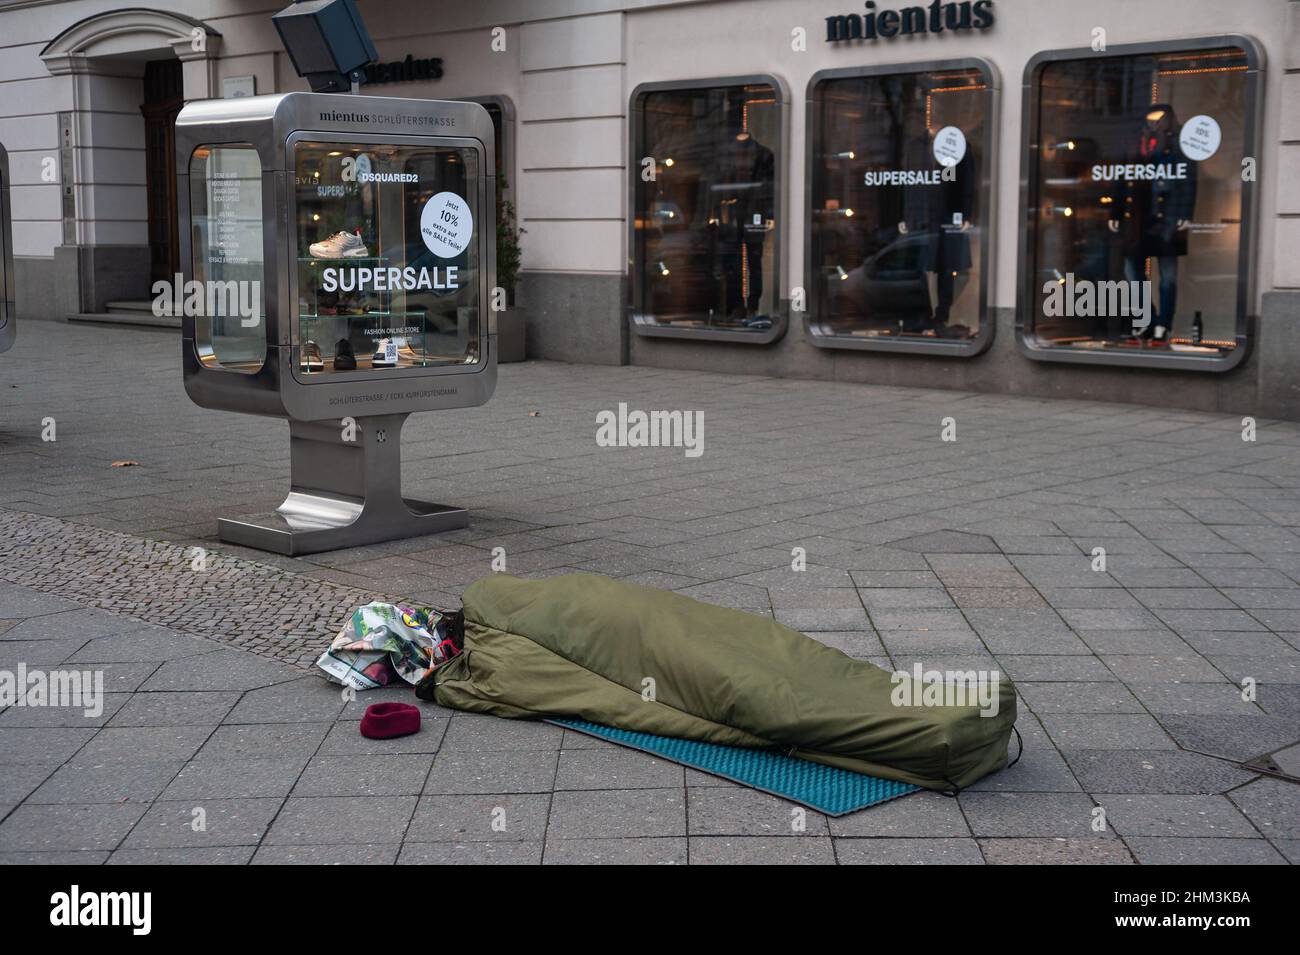 05.02.2022, Berlino, Germania, Europa - la persona senza tetto dorme nel sacco a pelo sul marciapiede di fronte ad un negozio di moda lungo Kurfuerstendamm. Foto Stock